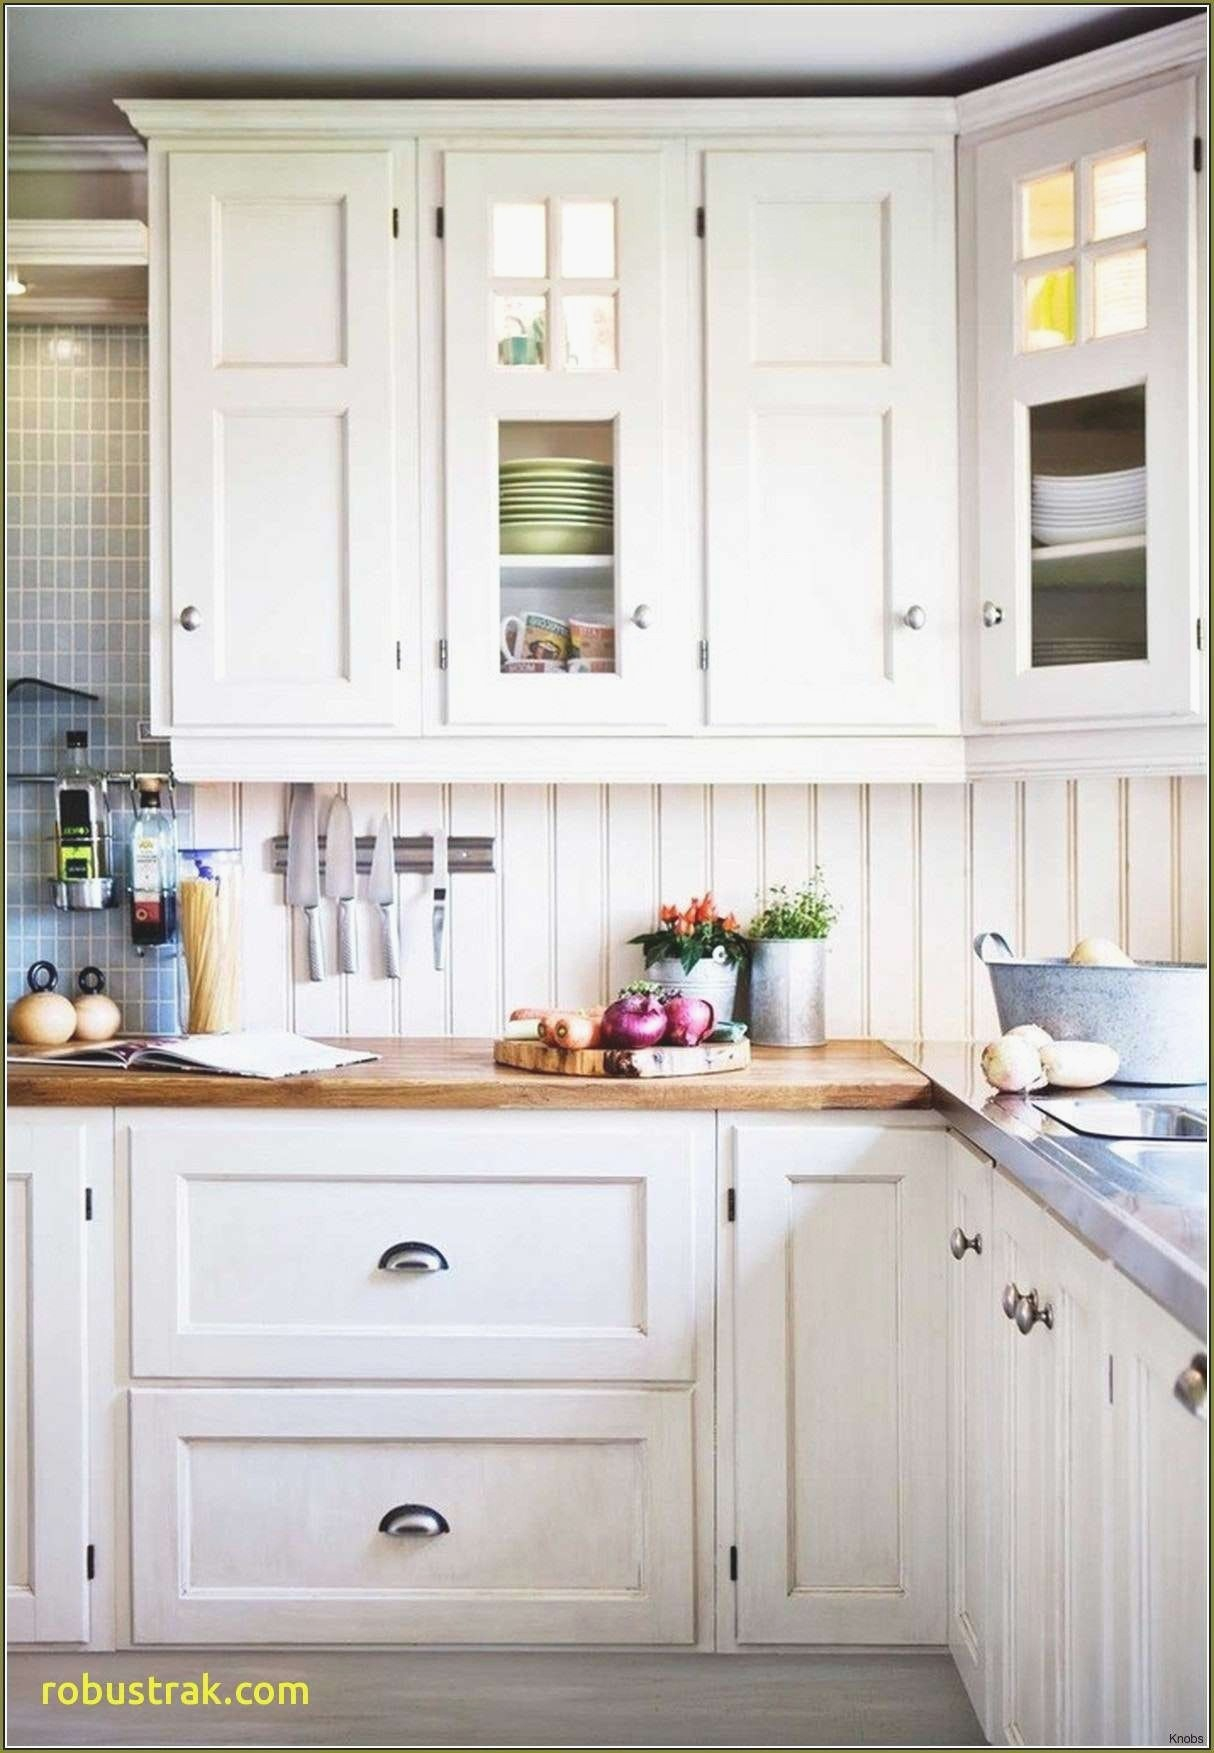 17 Inspirational Of Kitchen Cabinet Door Handles Gallery Home Ideas inside measurements 1214 X 1753